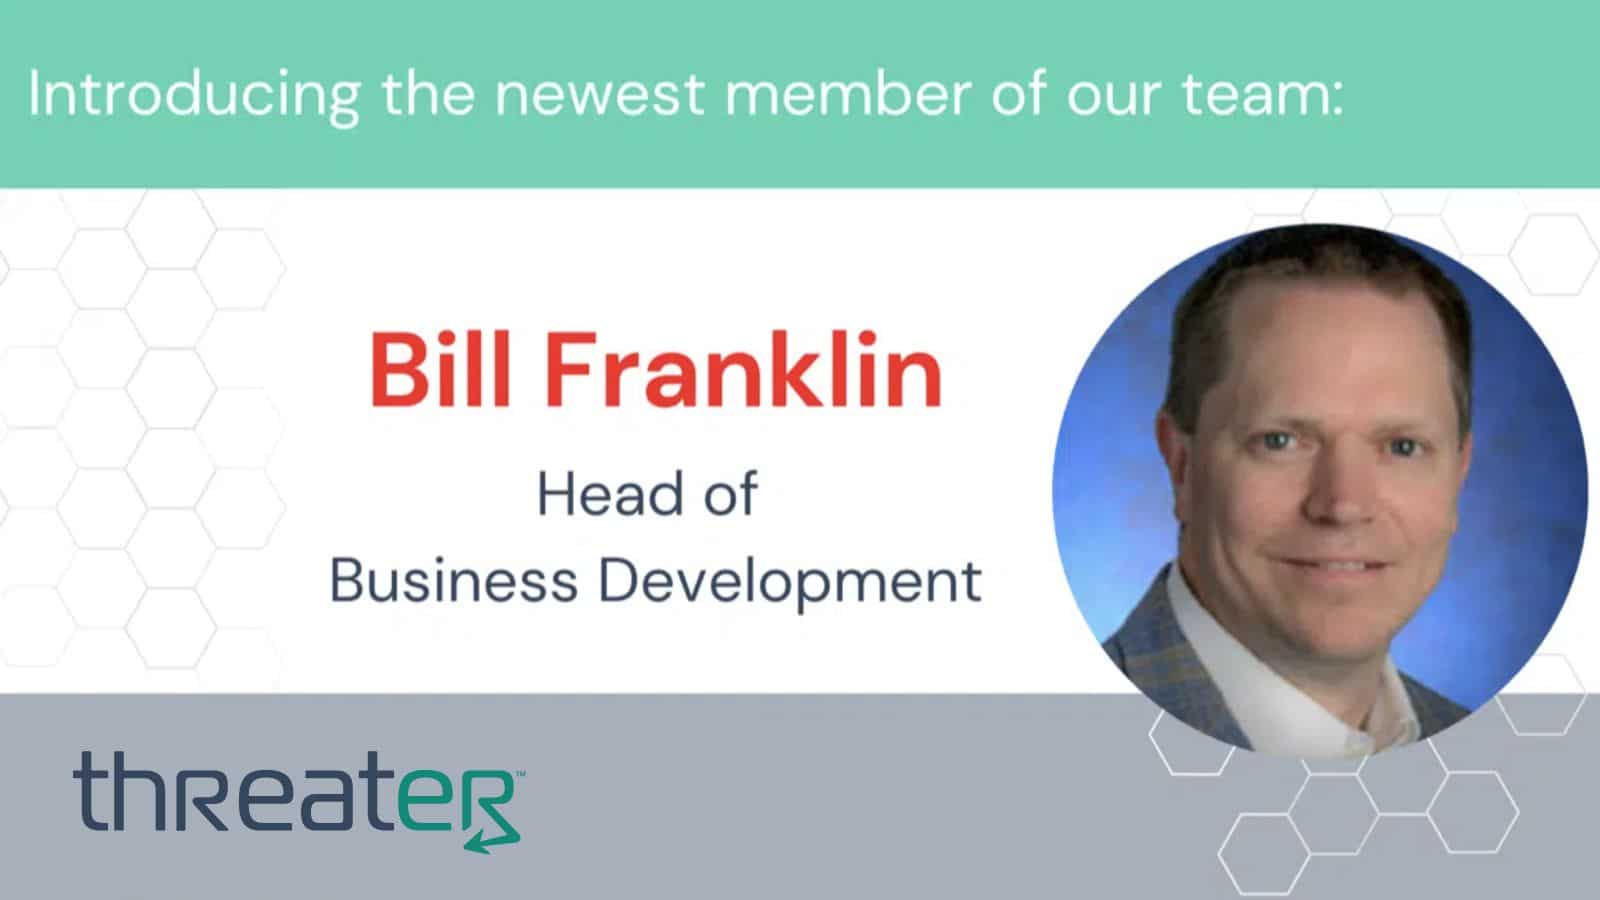 Bill Franklin hire announcement